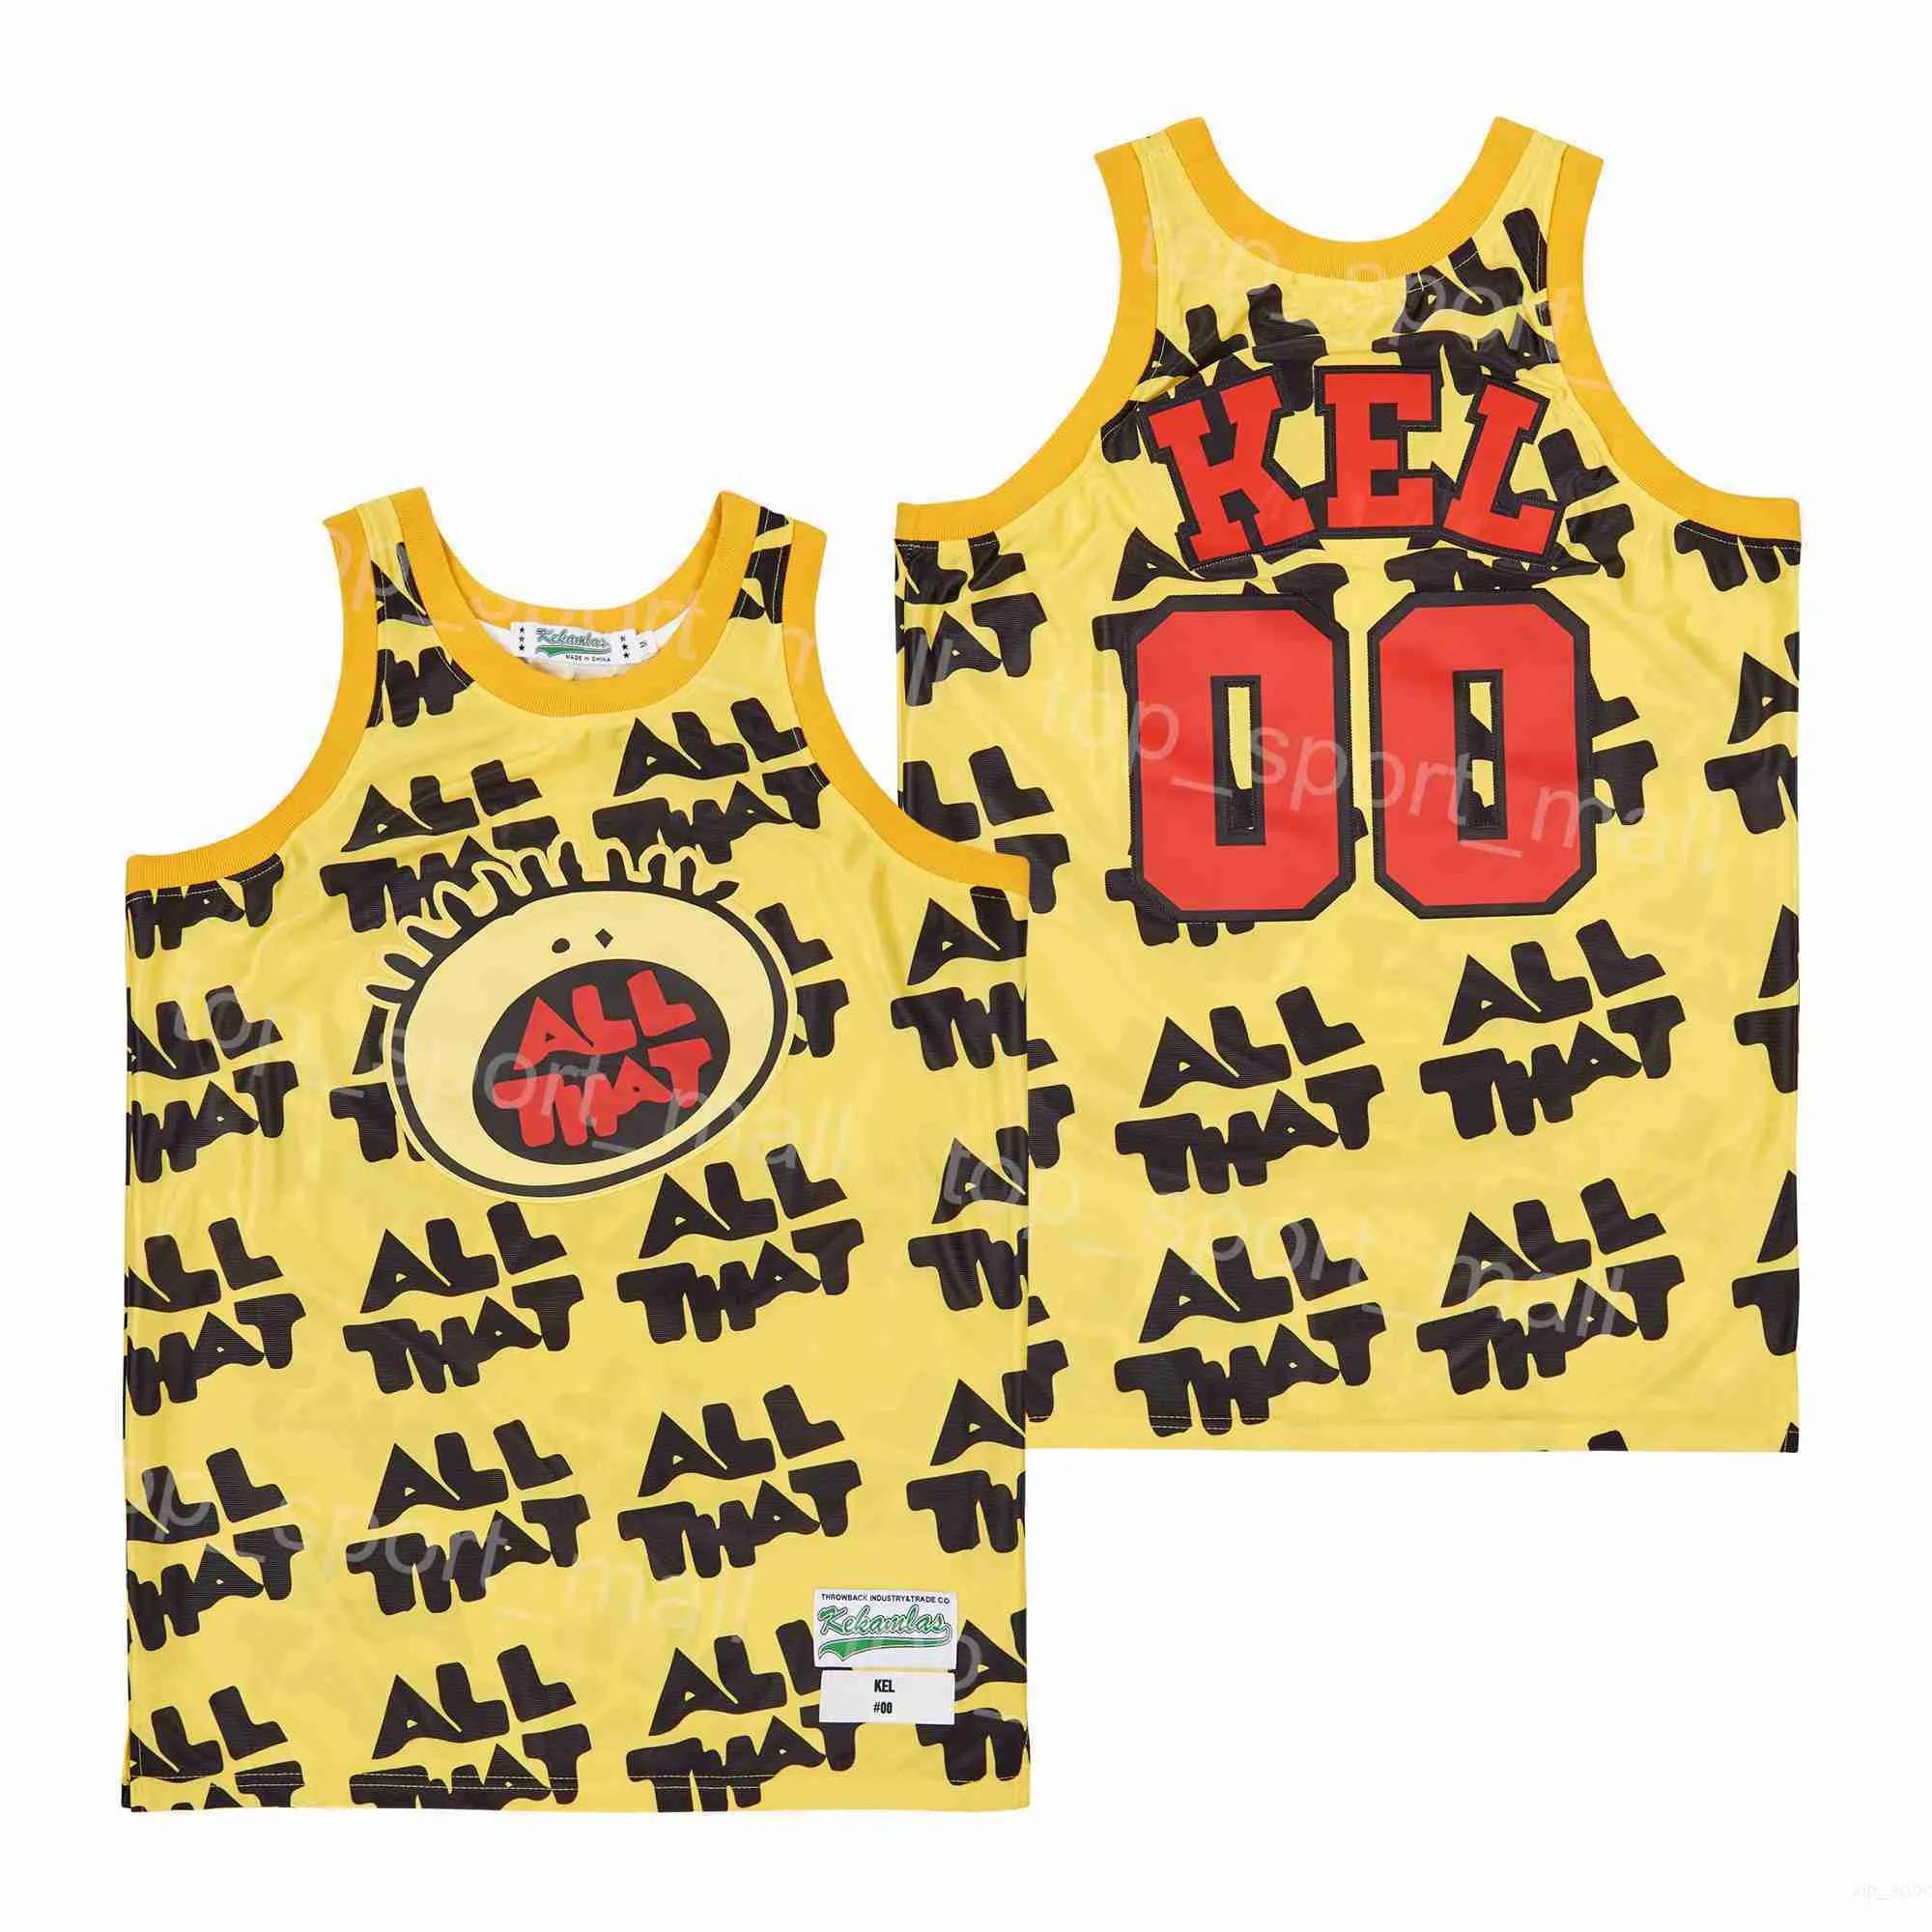 Film do koszykówki filmu All That 00 Kel koszulki serialu telewizyjnego Mitchell Sumped Hiphop dla fanów sportowych oddychające kolor kolor żółty czysty uniwersytet uniwersytecki high